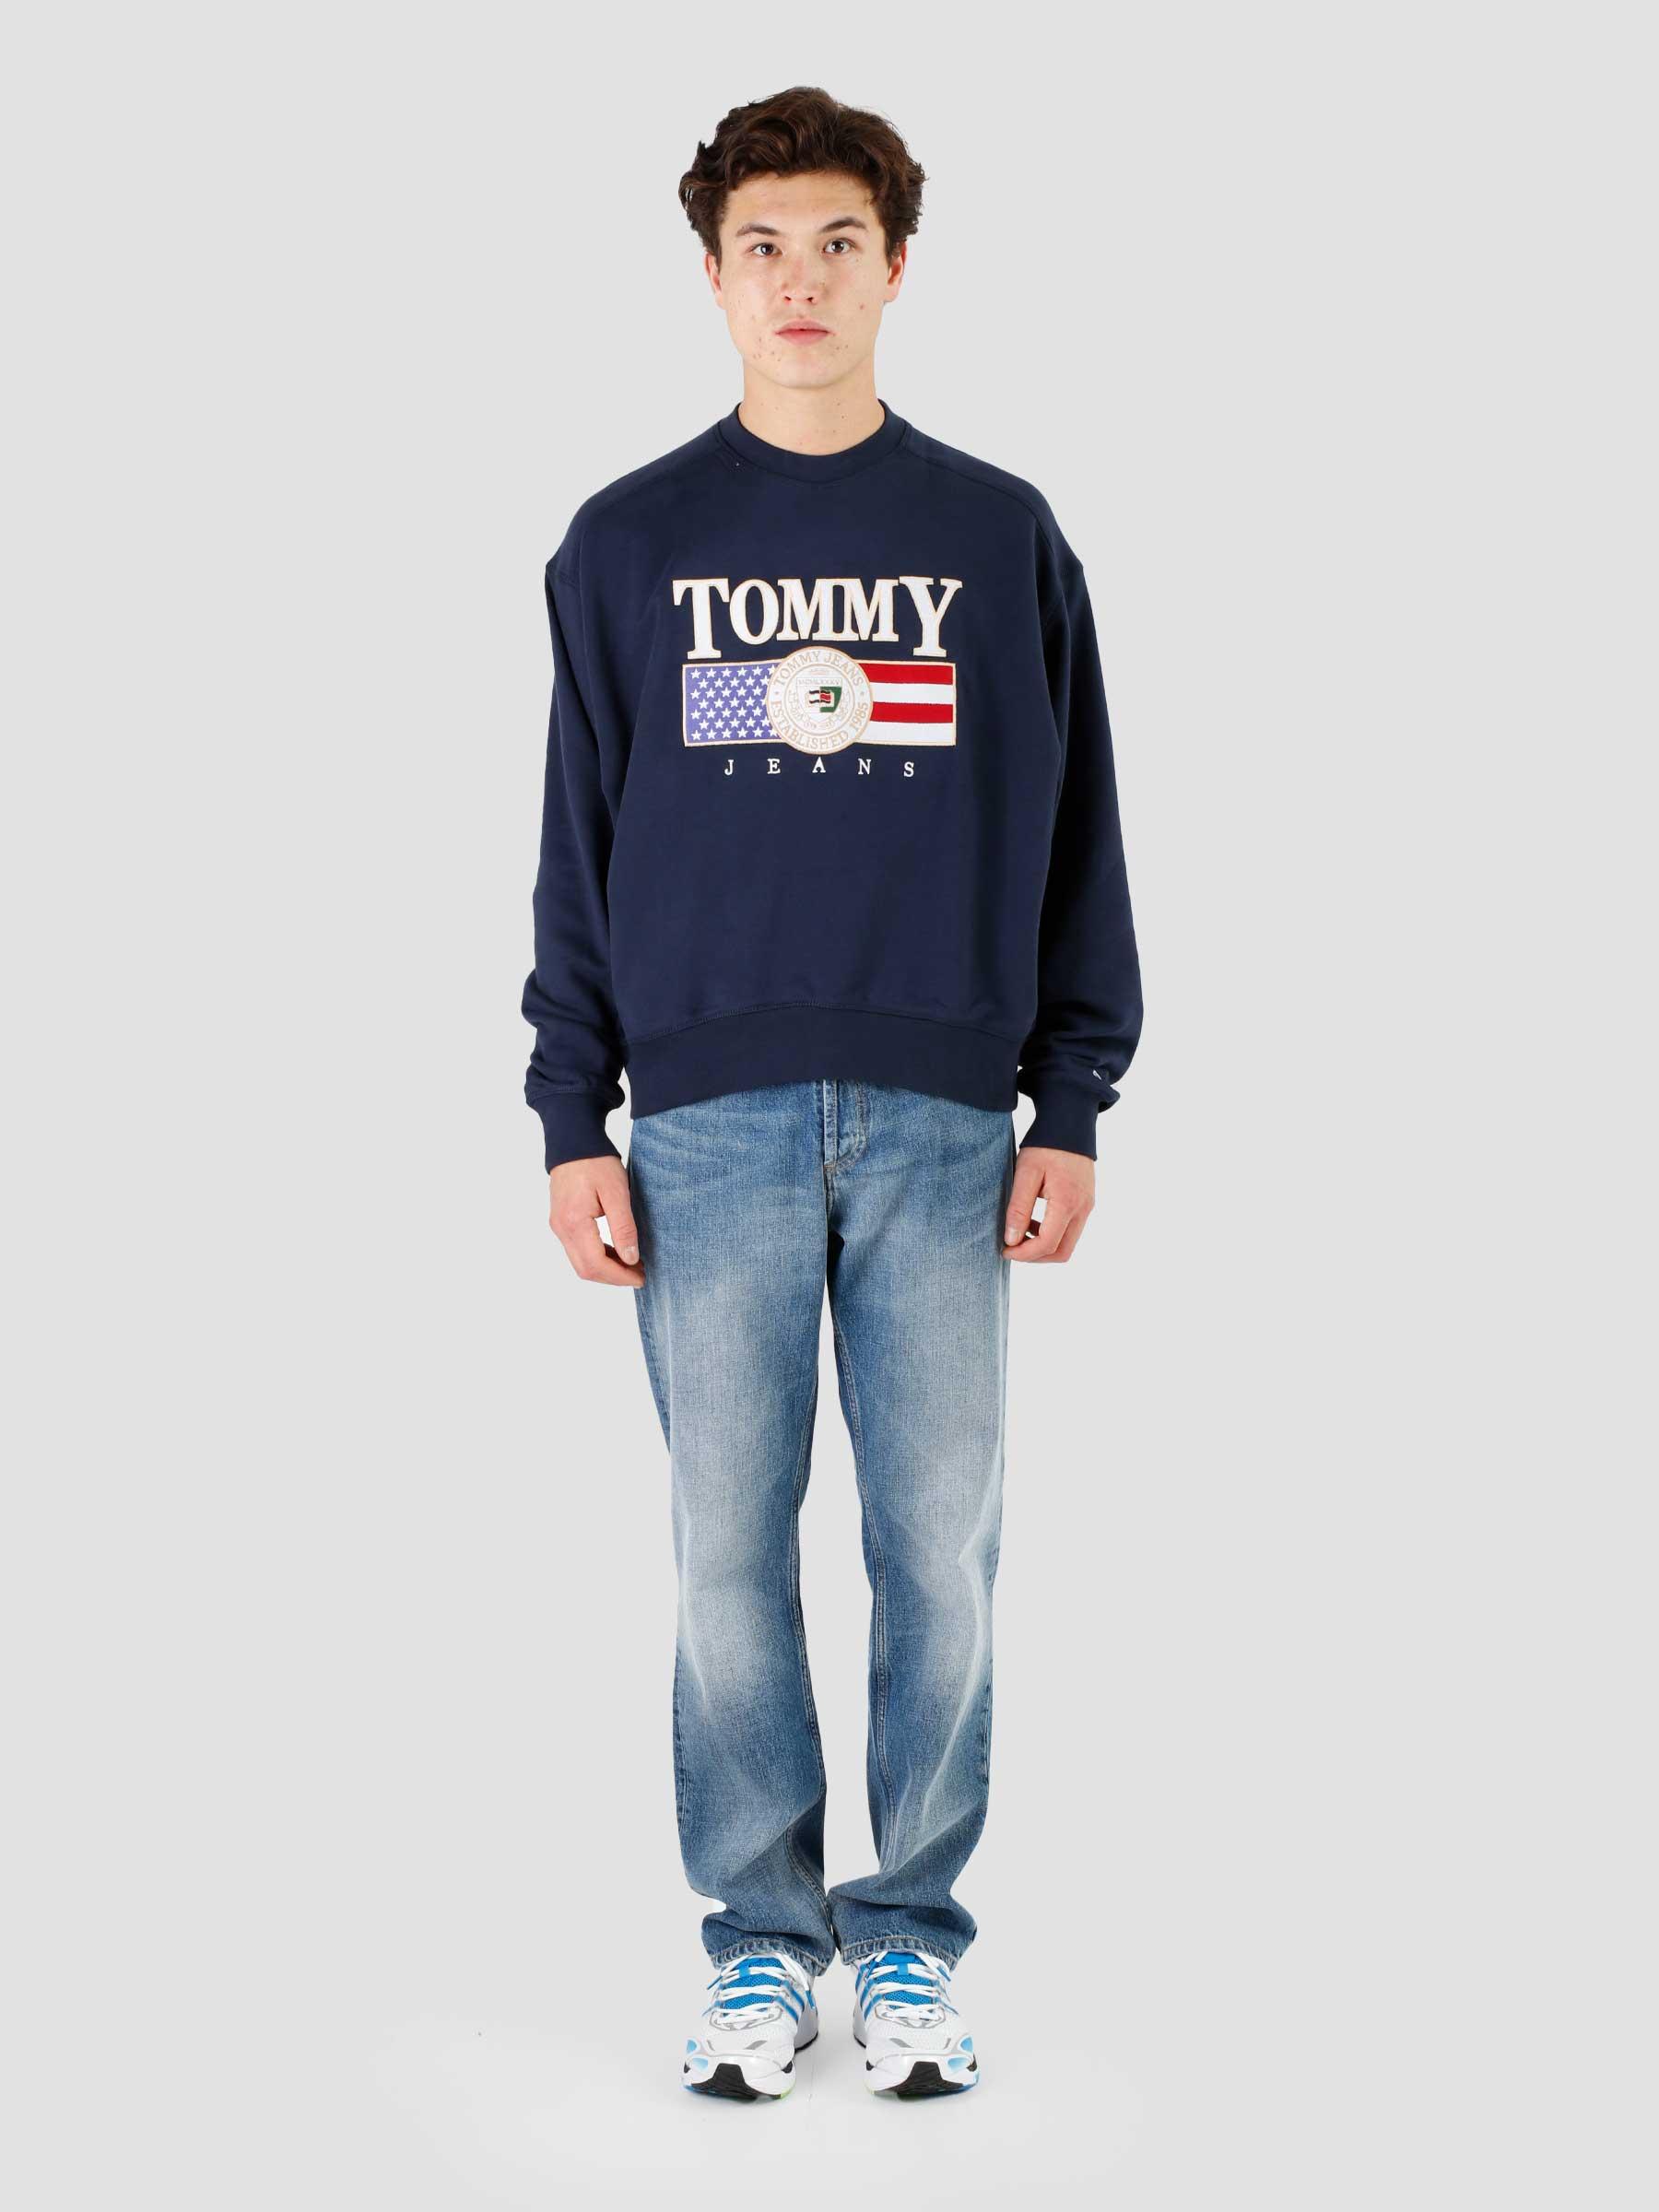 Tommy Jeans Freshcotton Luxe TJM Twilight - Boxy Navy Crewneck TJ